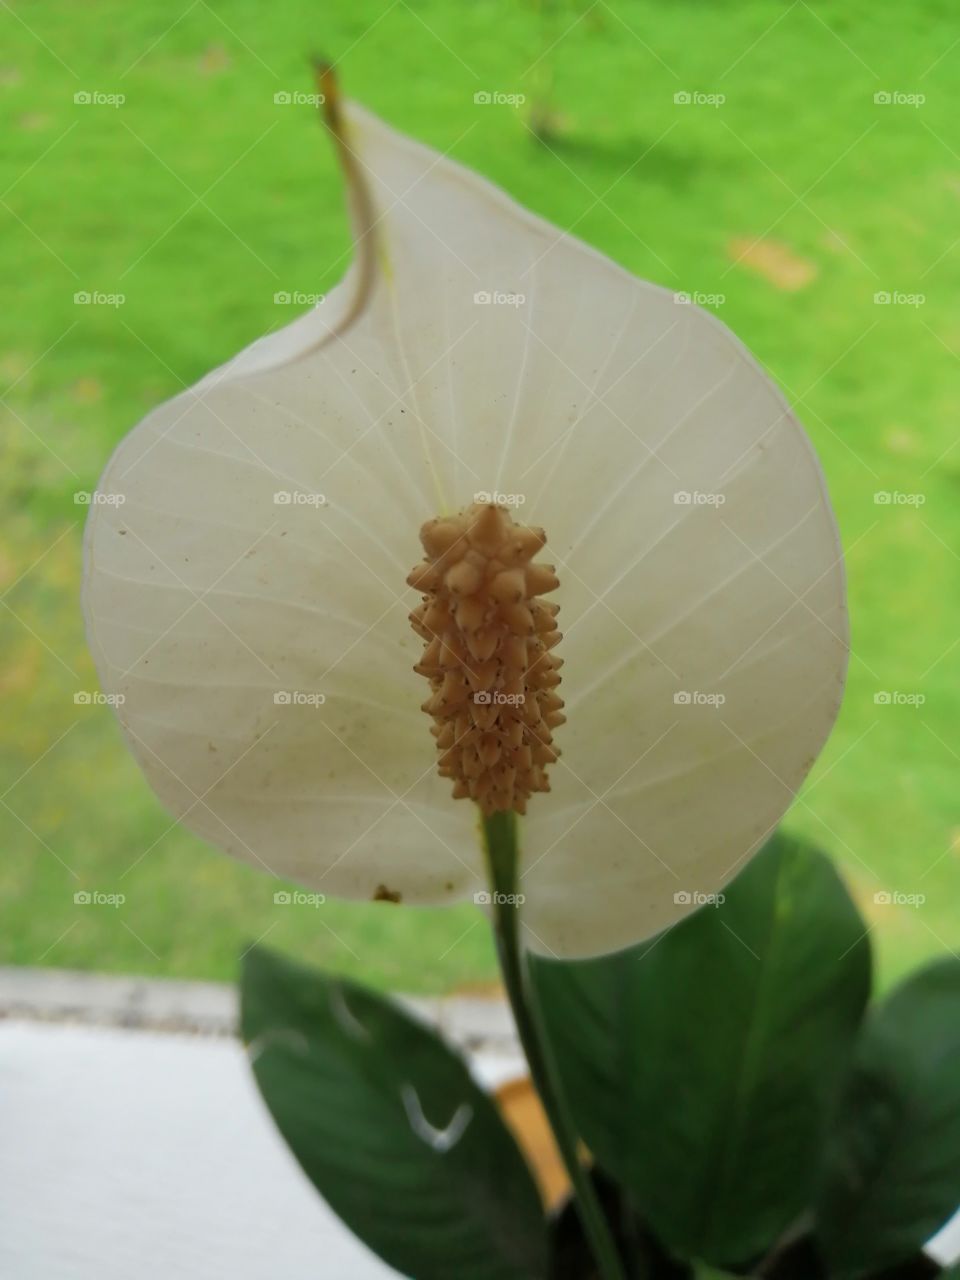 The fresh white flower.